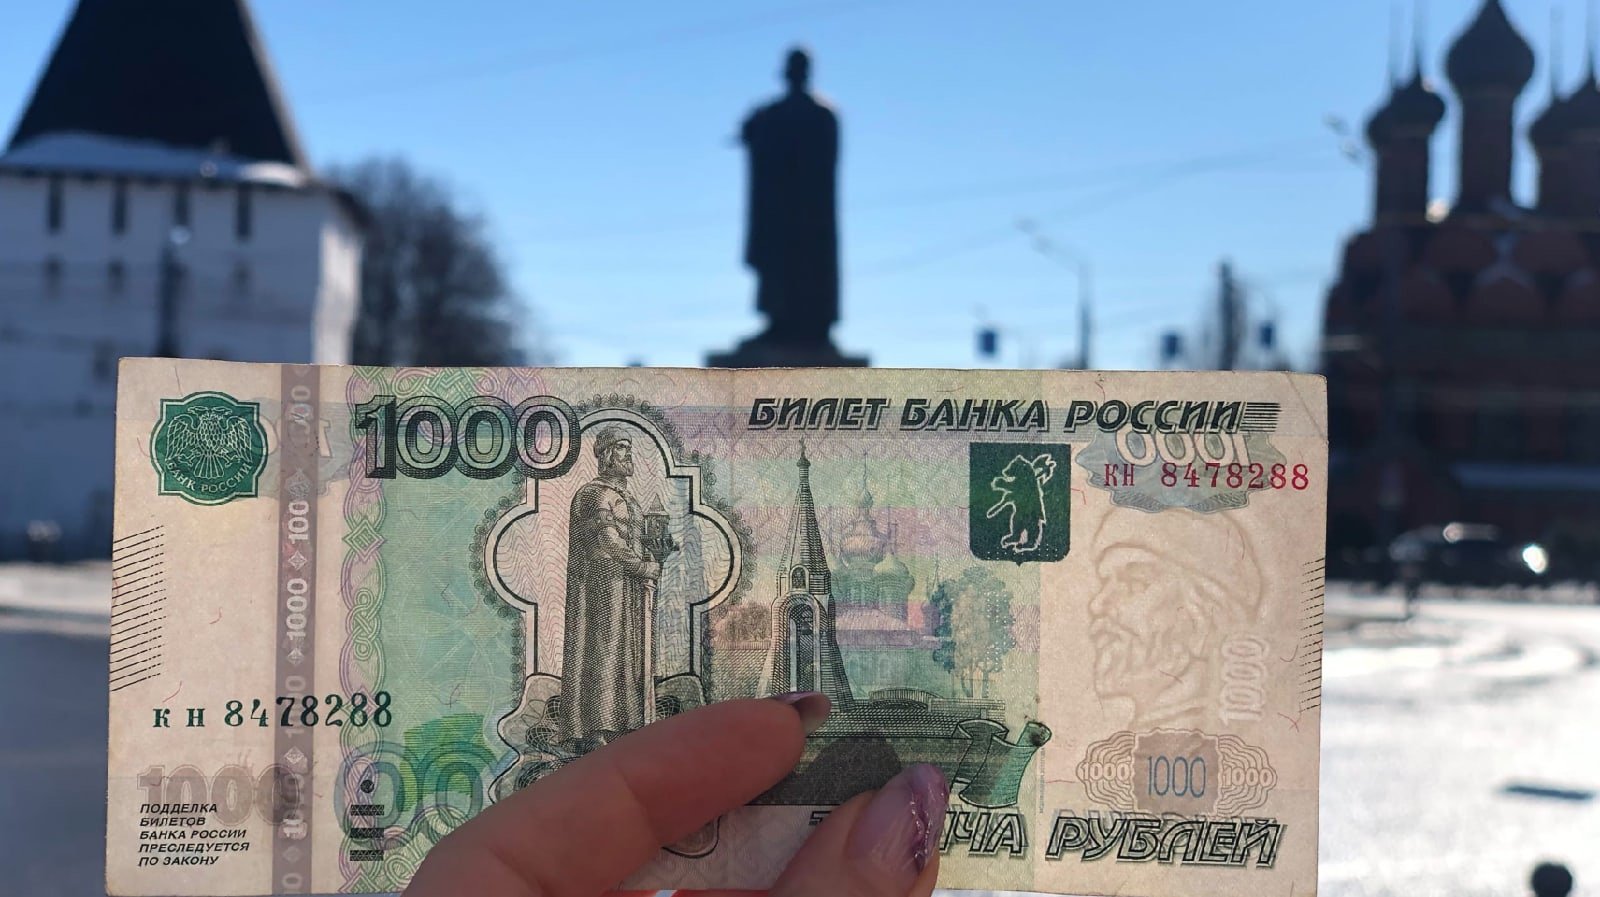 Как получить 1000 рублей за регистрацию в казино?